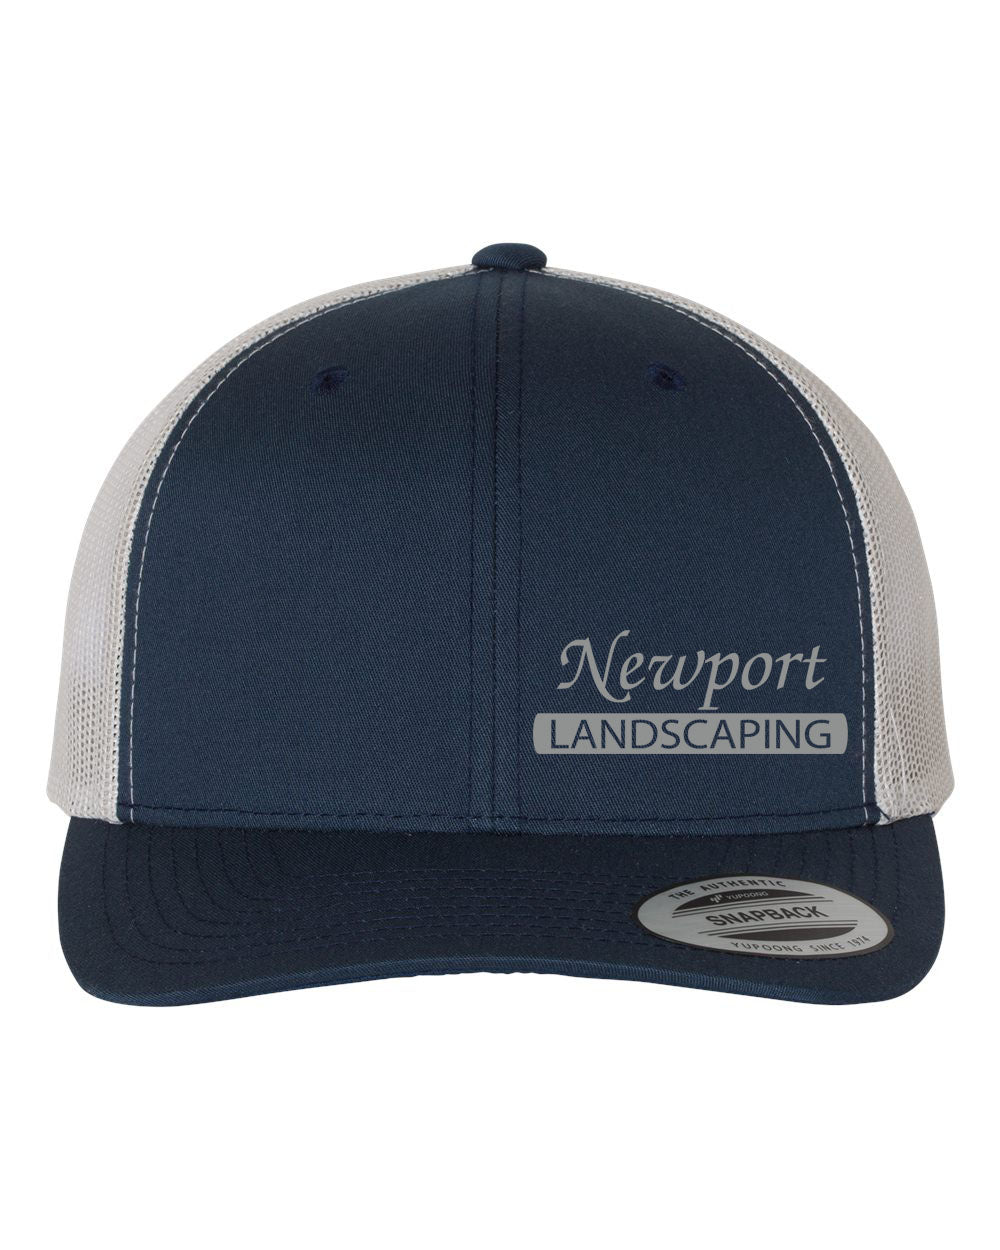 Newport Landscaping Trucker Hat